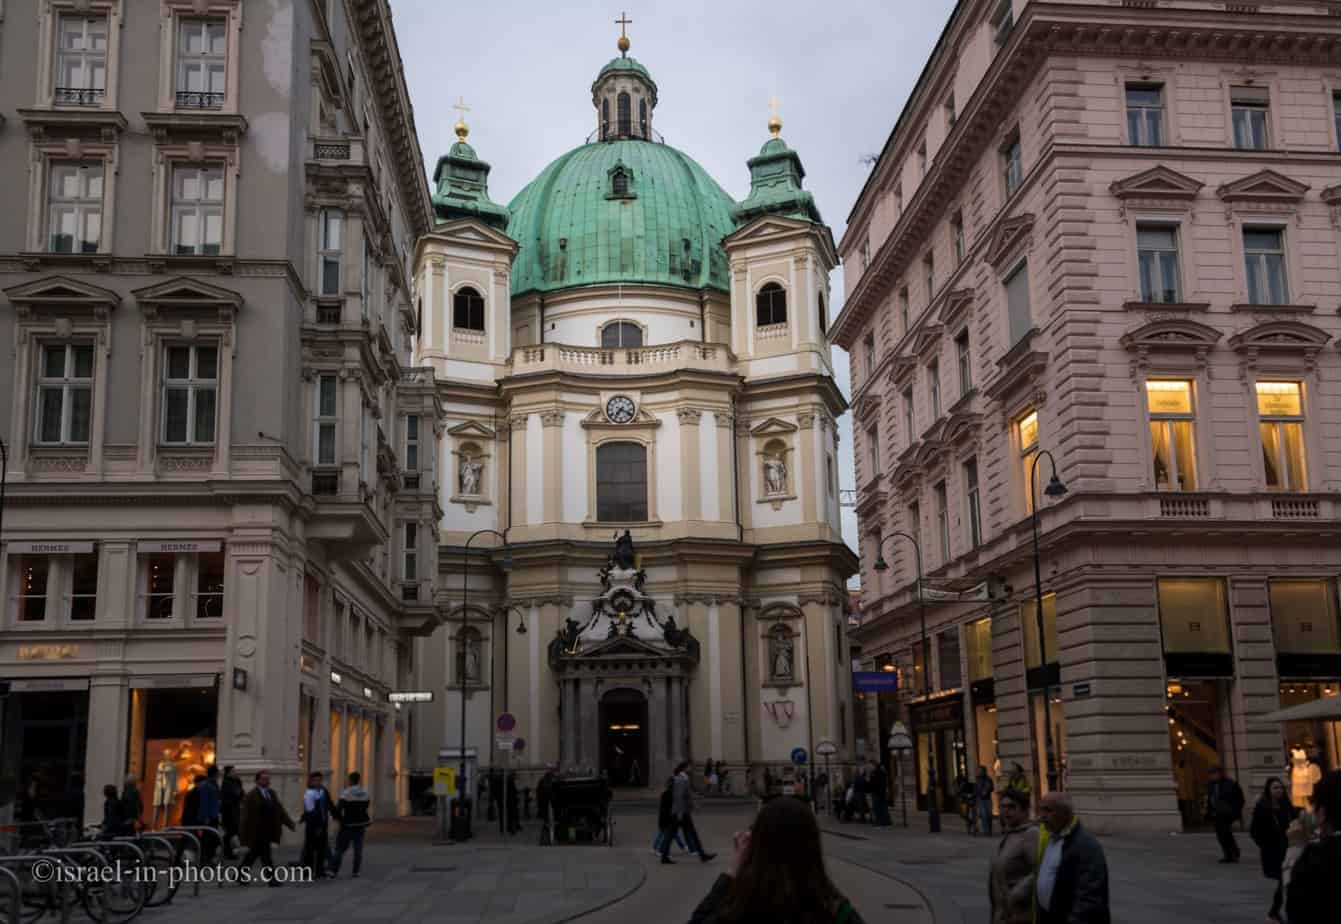 St. Церковь �St�тра. St. Петра, также известная как Петерскирхе в Вене., Столица Австрии